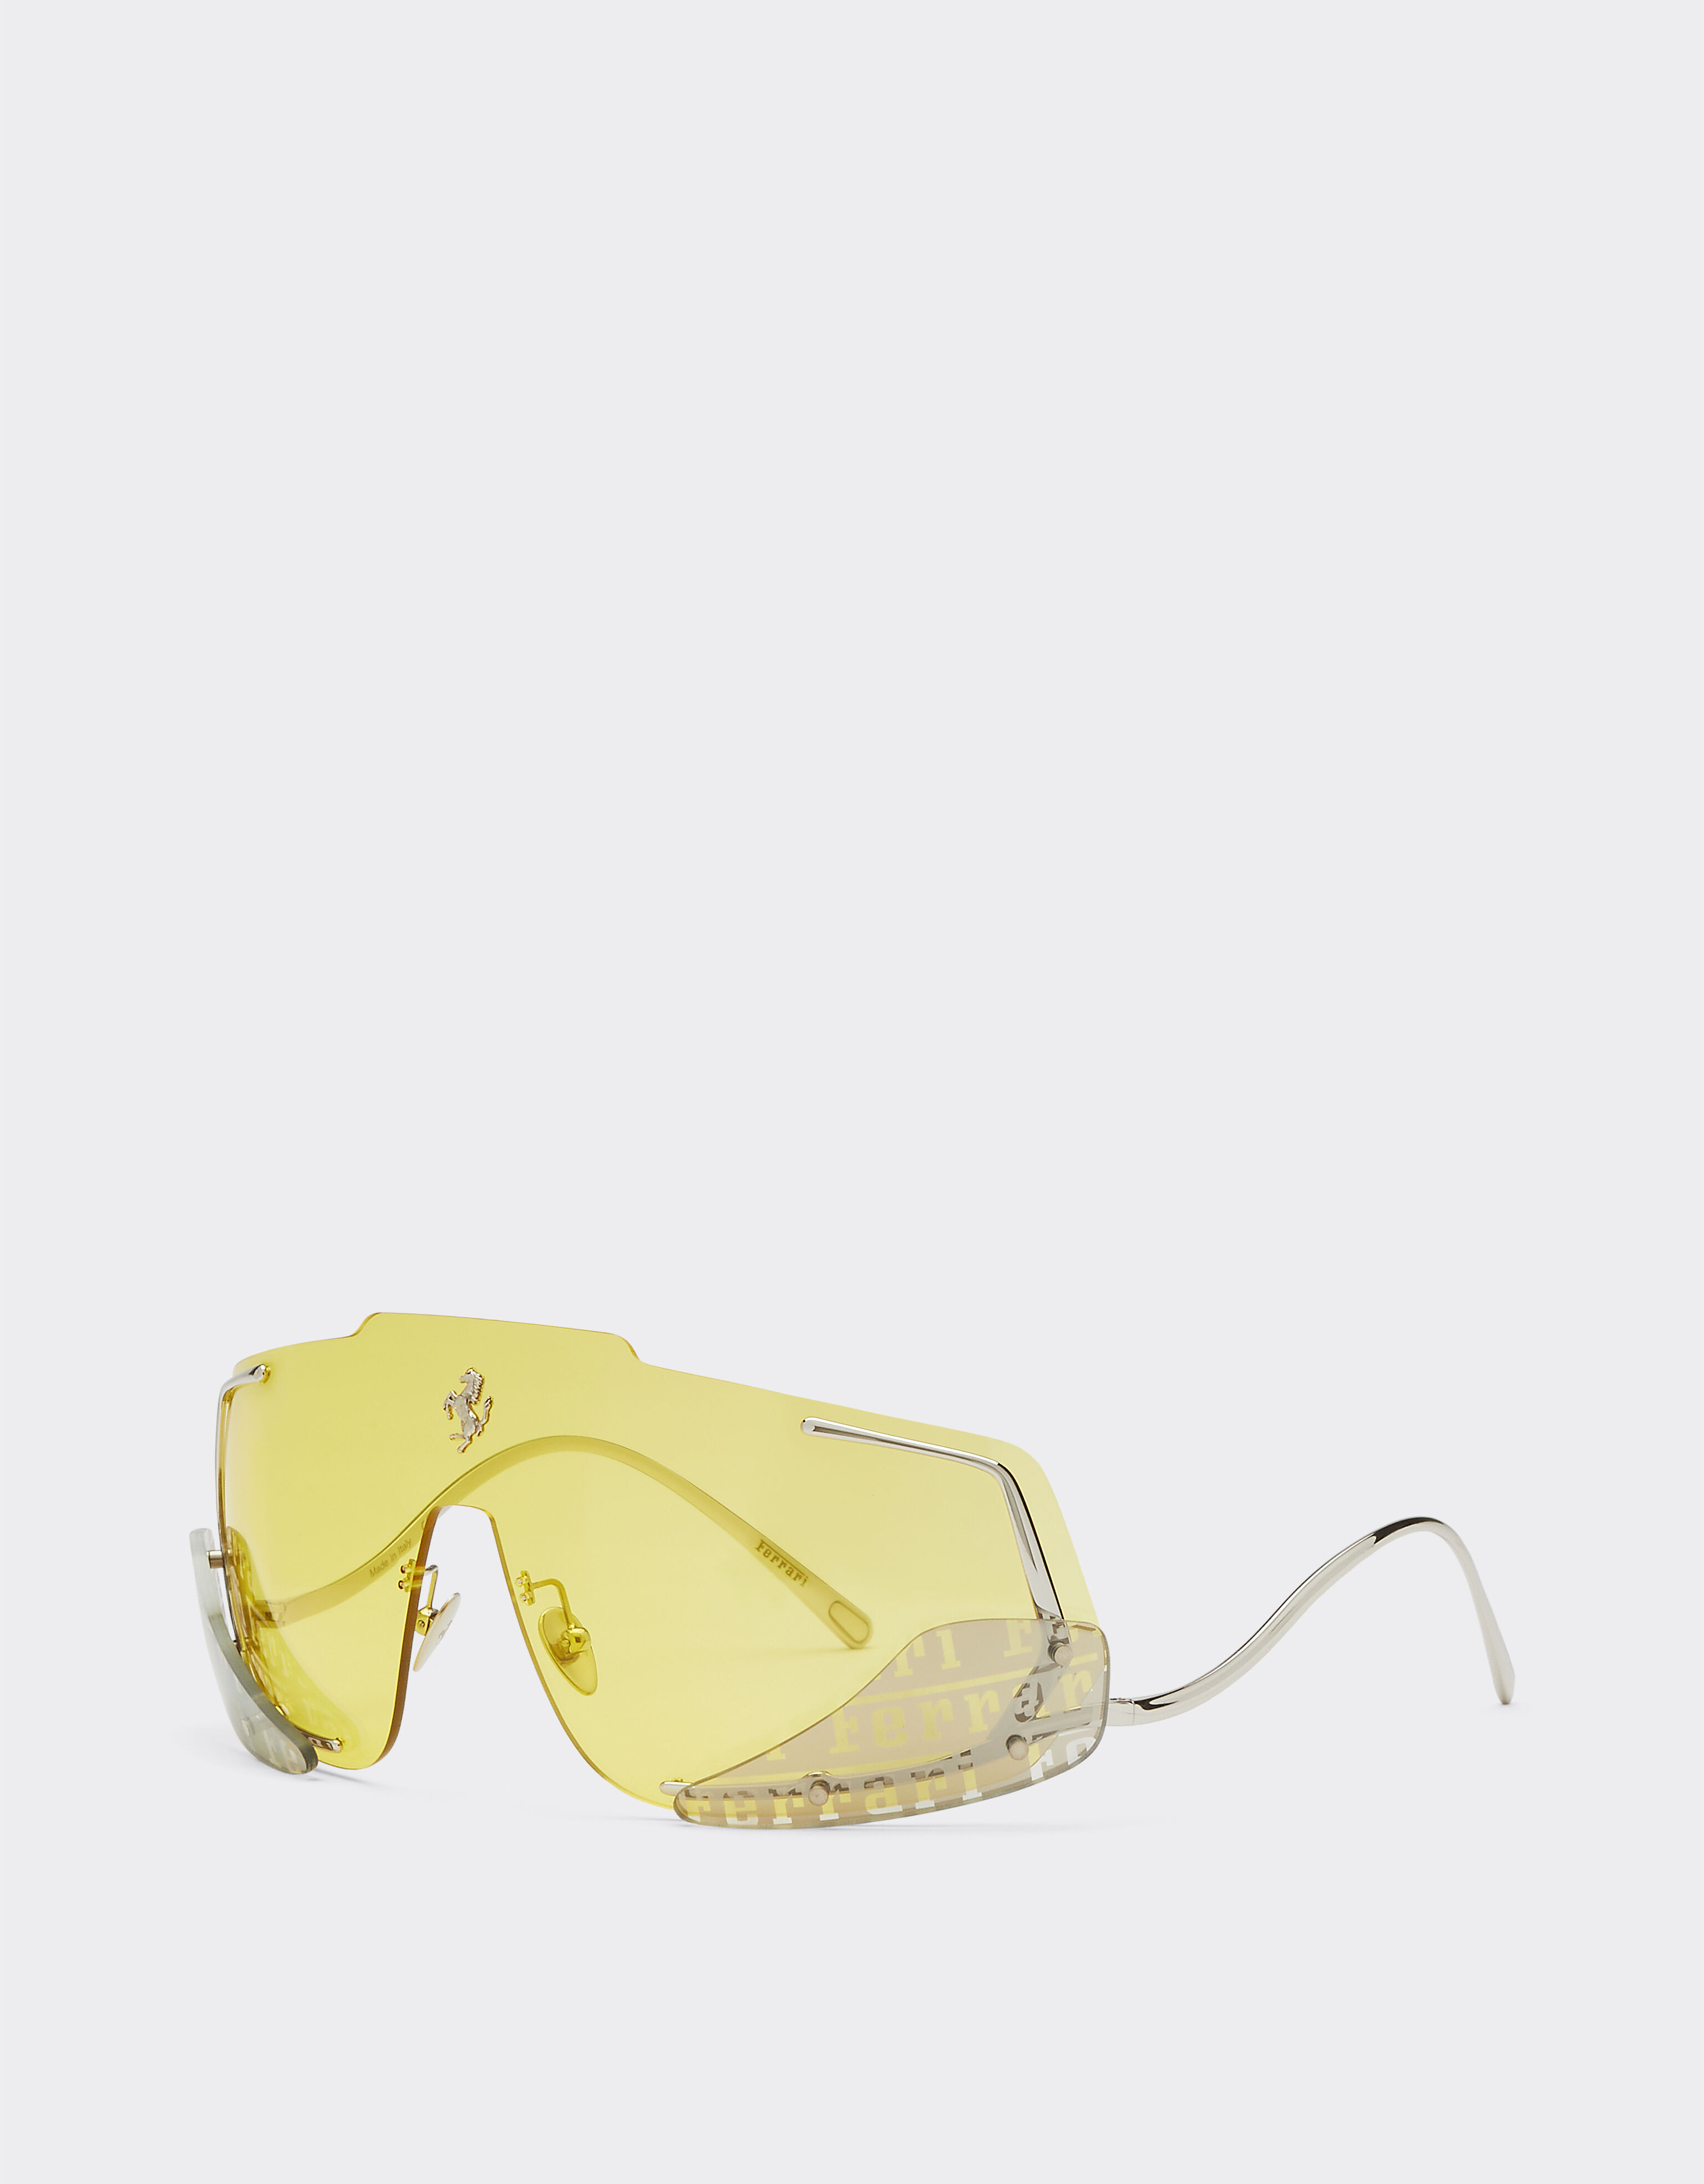 Ferrari Ferrari sunglasses with yellow lenses Silver F0406f